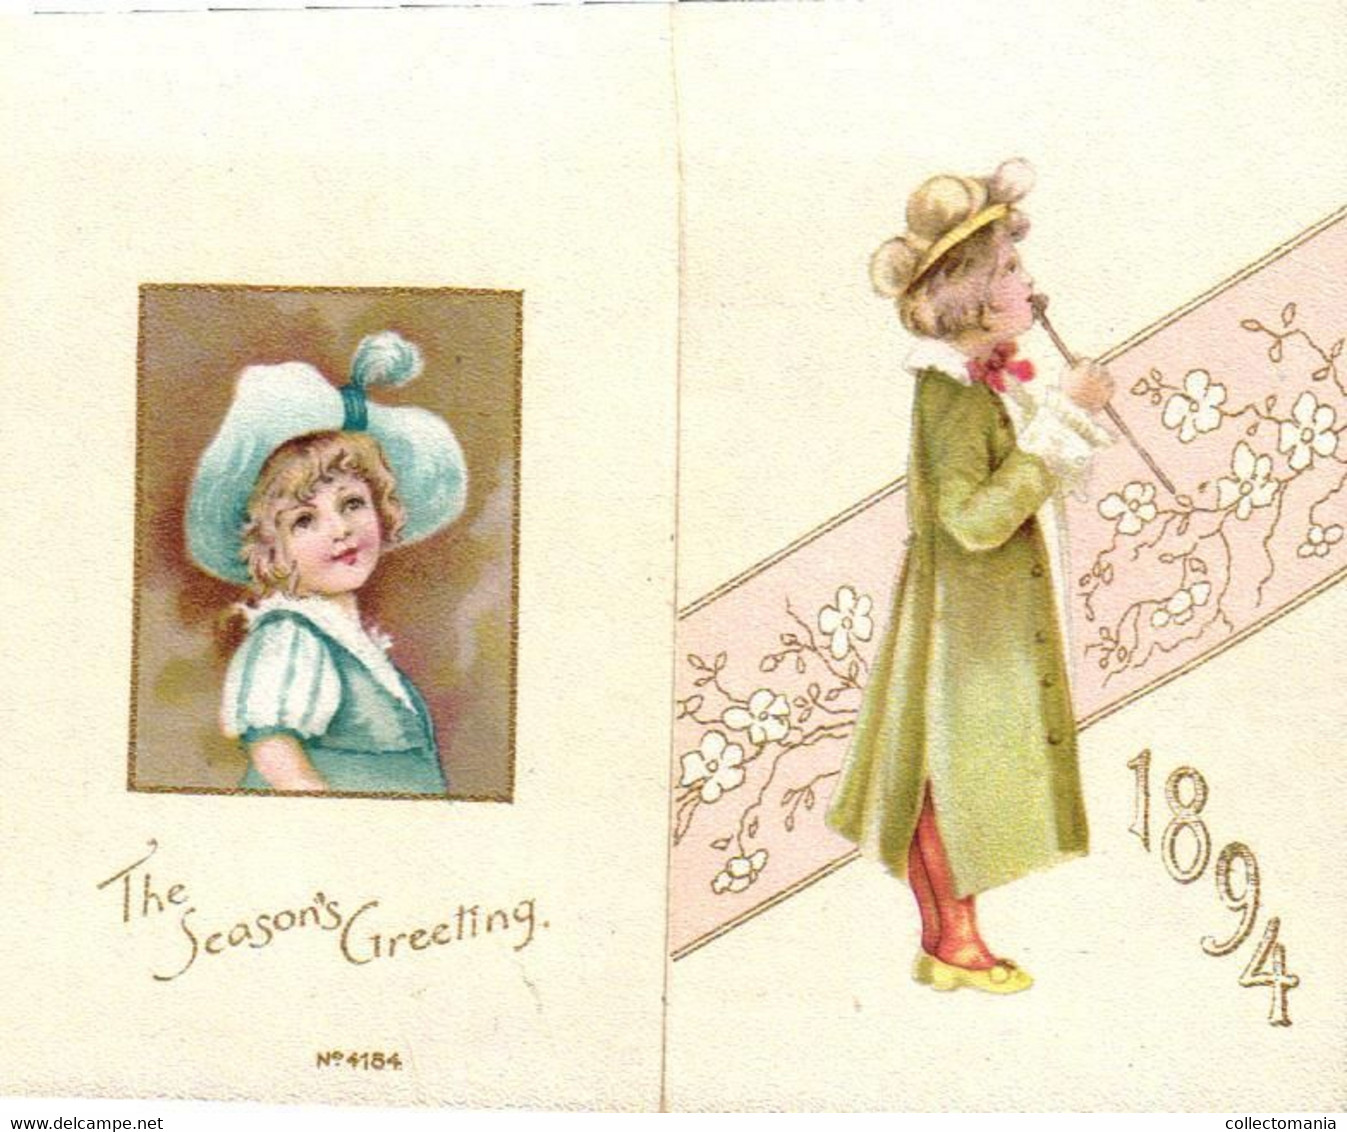 1 Calendar 1894  Bird & Co Engravers Boston  Litho. - Tamaño Pequeño : ...-1900